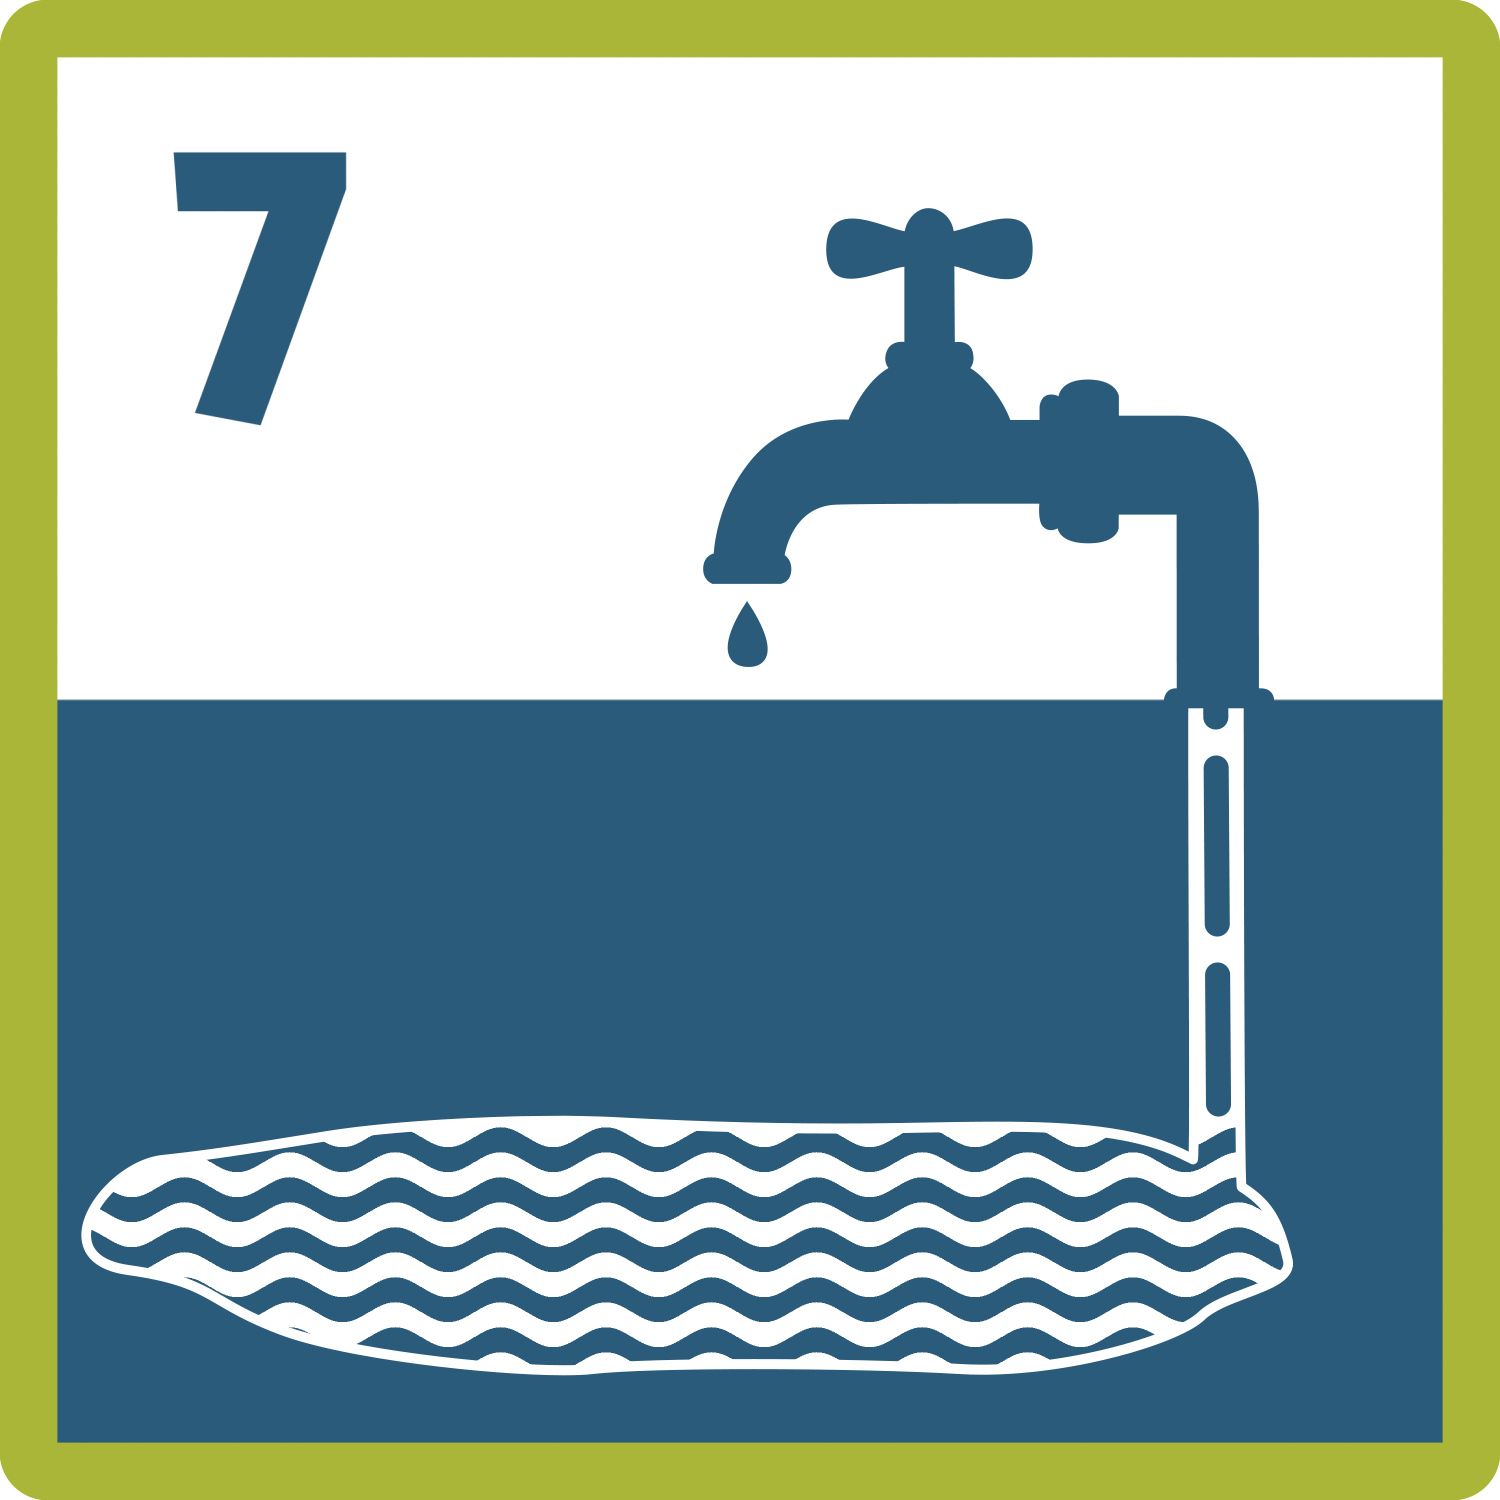 Piktogramm: ein tropfender Wasserhahn, dessen Rohr in ein tief unter der Oberfläche gelegenes Wasservorkommen reicht